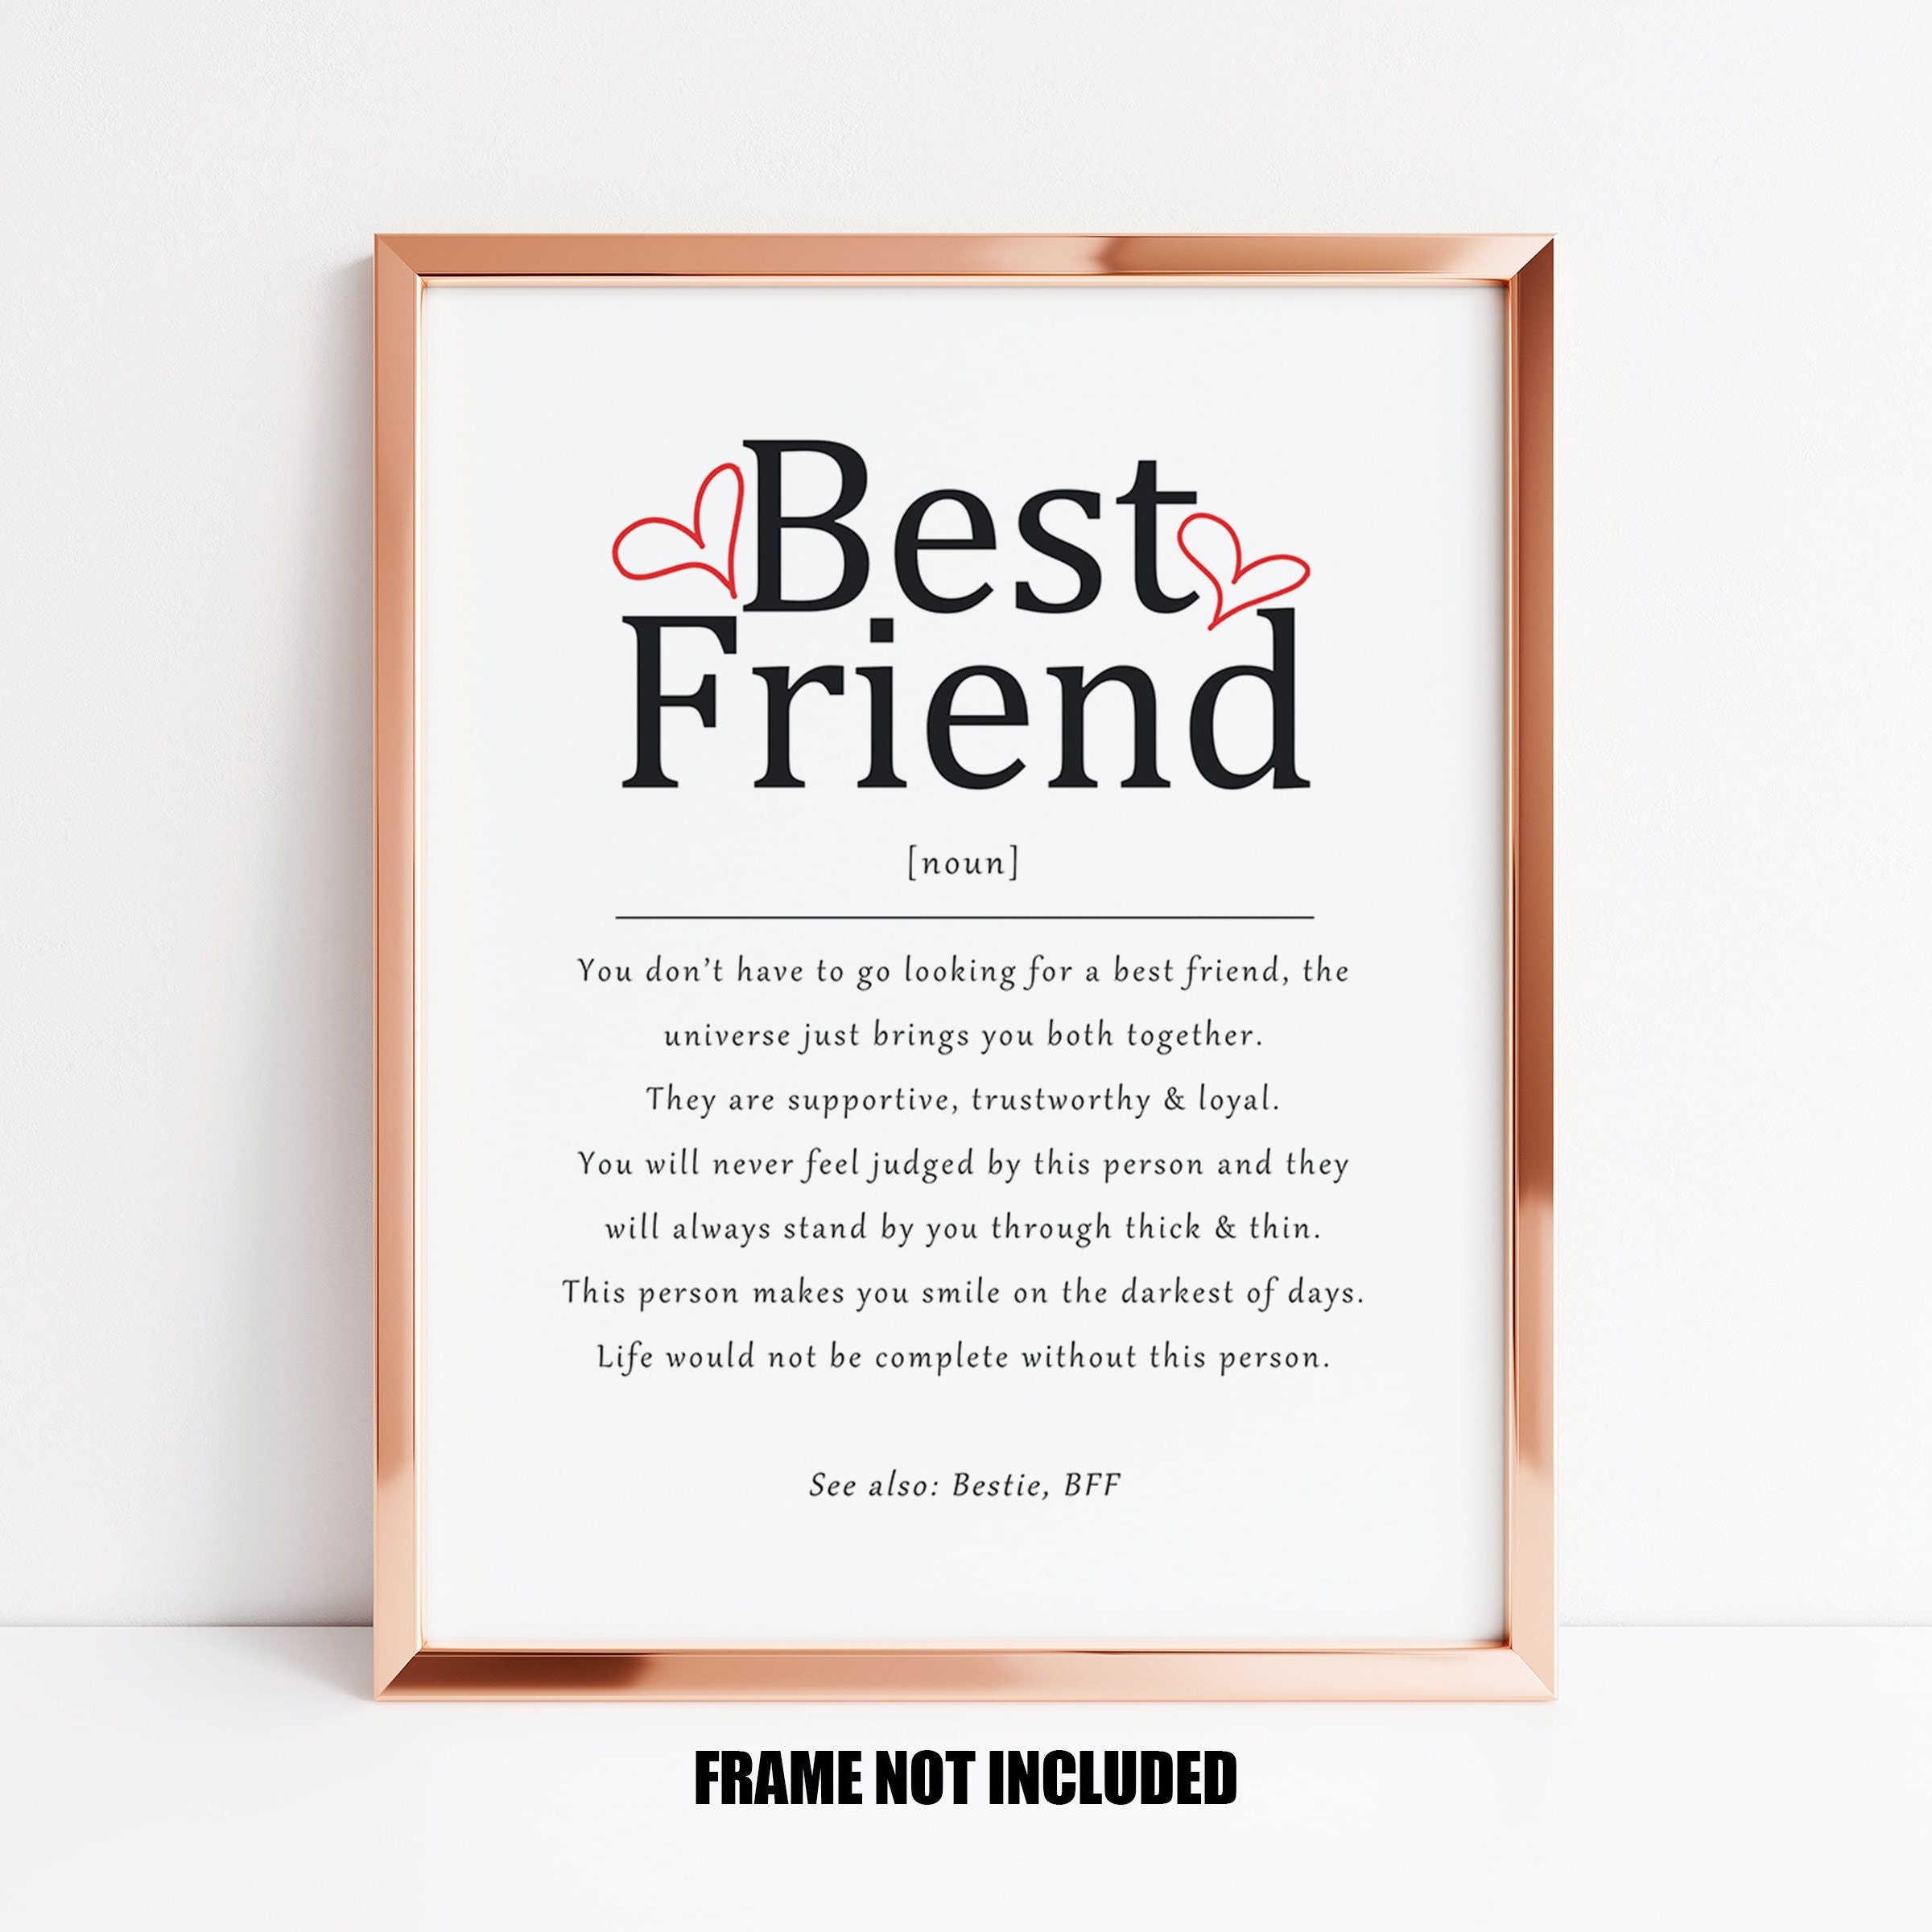 Bestie definition, Best friend definition, Bestie meaning, Friendship  Quote, Best friend Gift, Best Friend Quote, Deep meaningful friendship art  